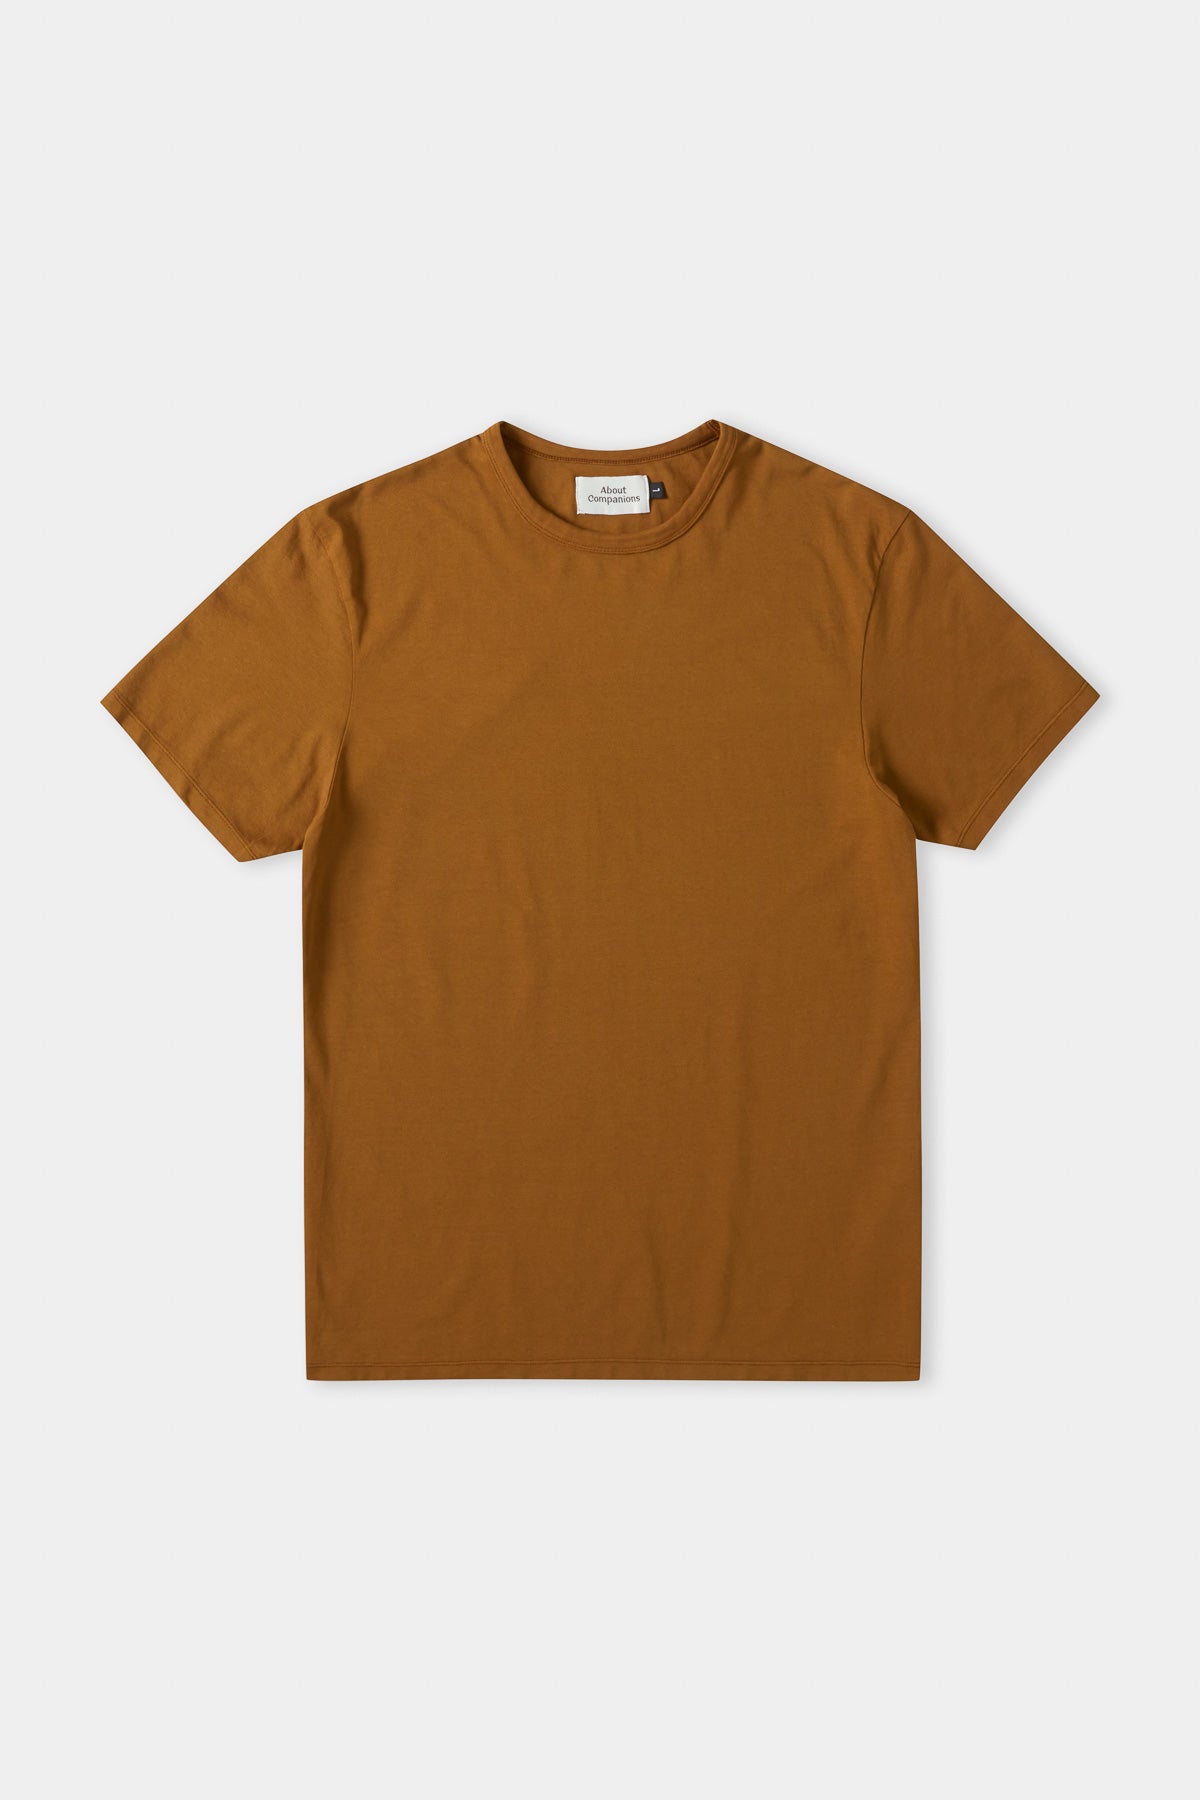 LIRON t-shirt eco pique golden brown